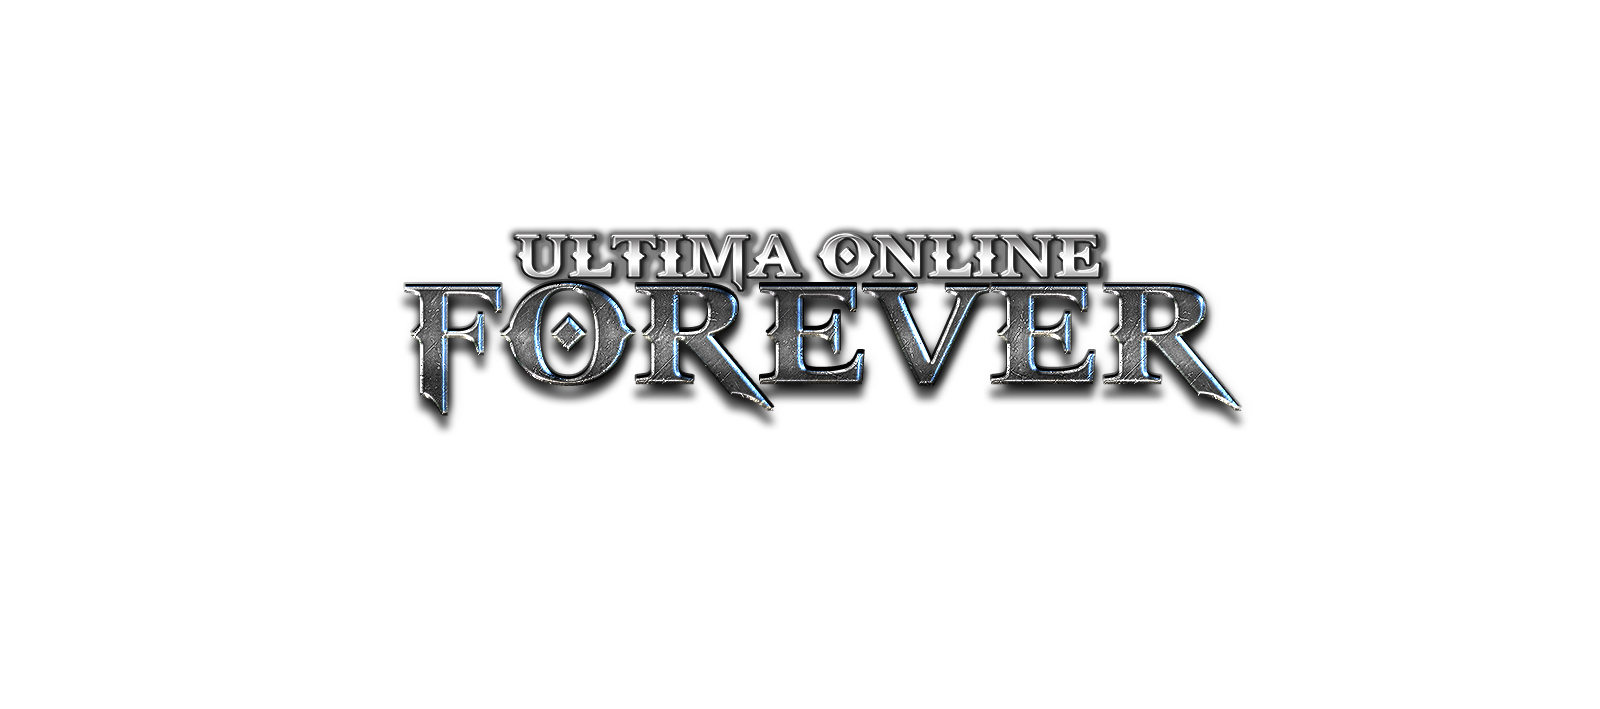 ultima online forever vs ultima online